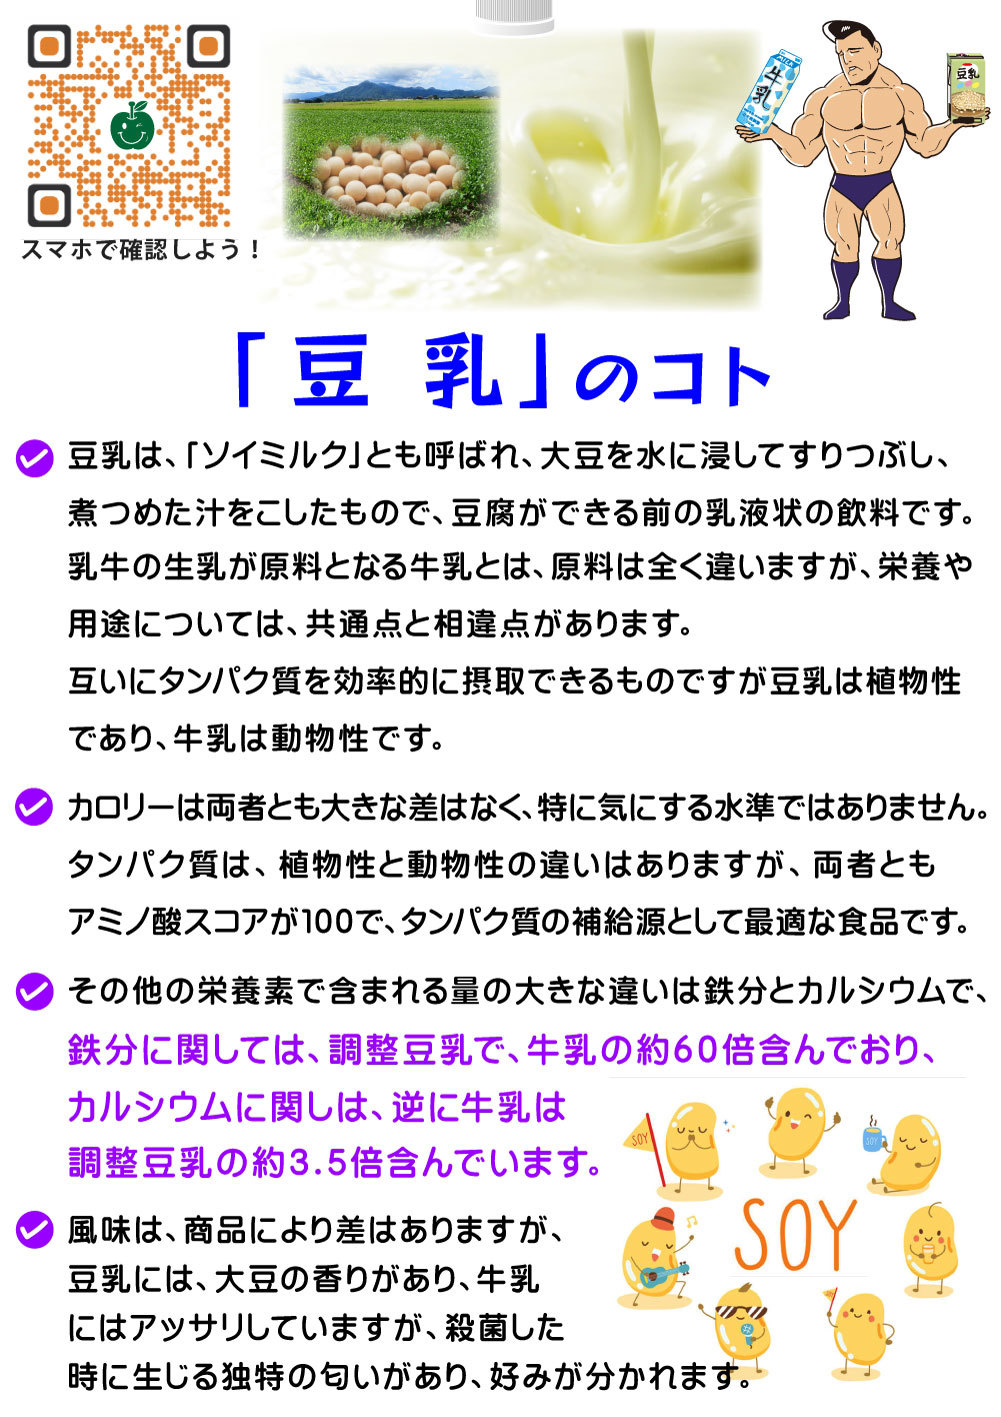 5~6_V101-豆乳のコト-(カラー)1